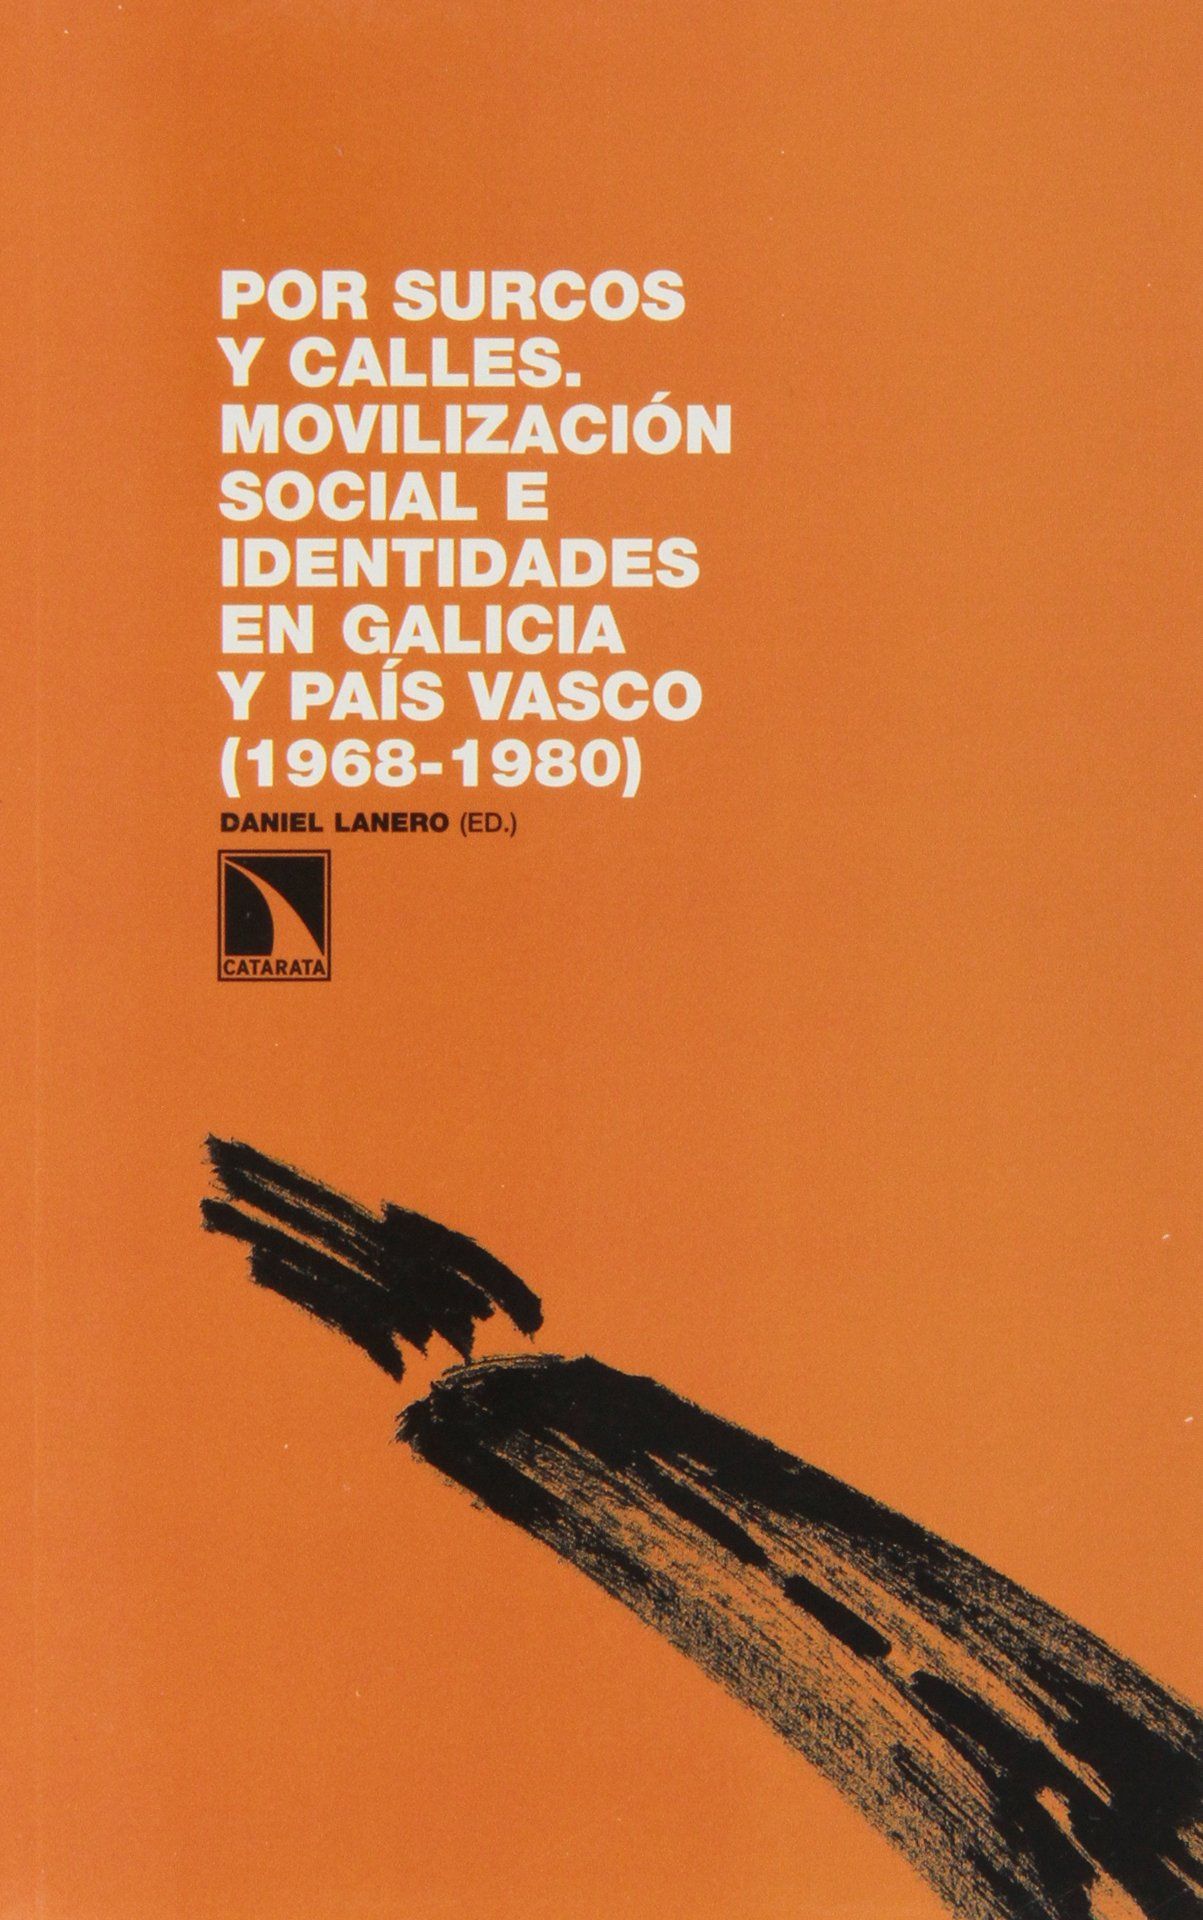 POR SURCOS Y CALLES. MOVILIZACIÓN SOCIAL E IDENTIDADES EN GALICIA Y PAÍS VASCO, 1968-1980